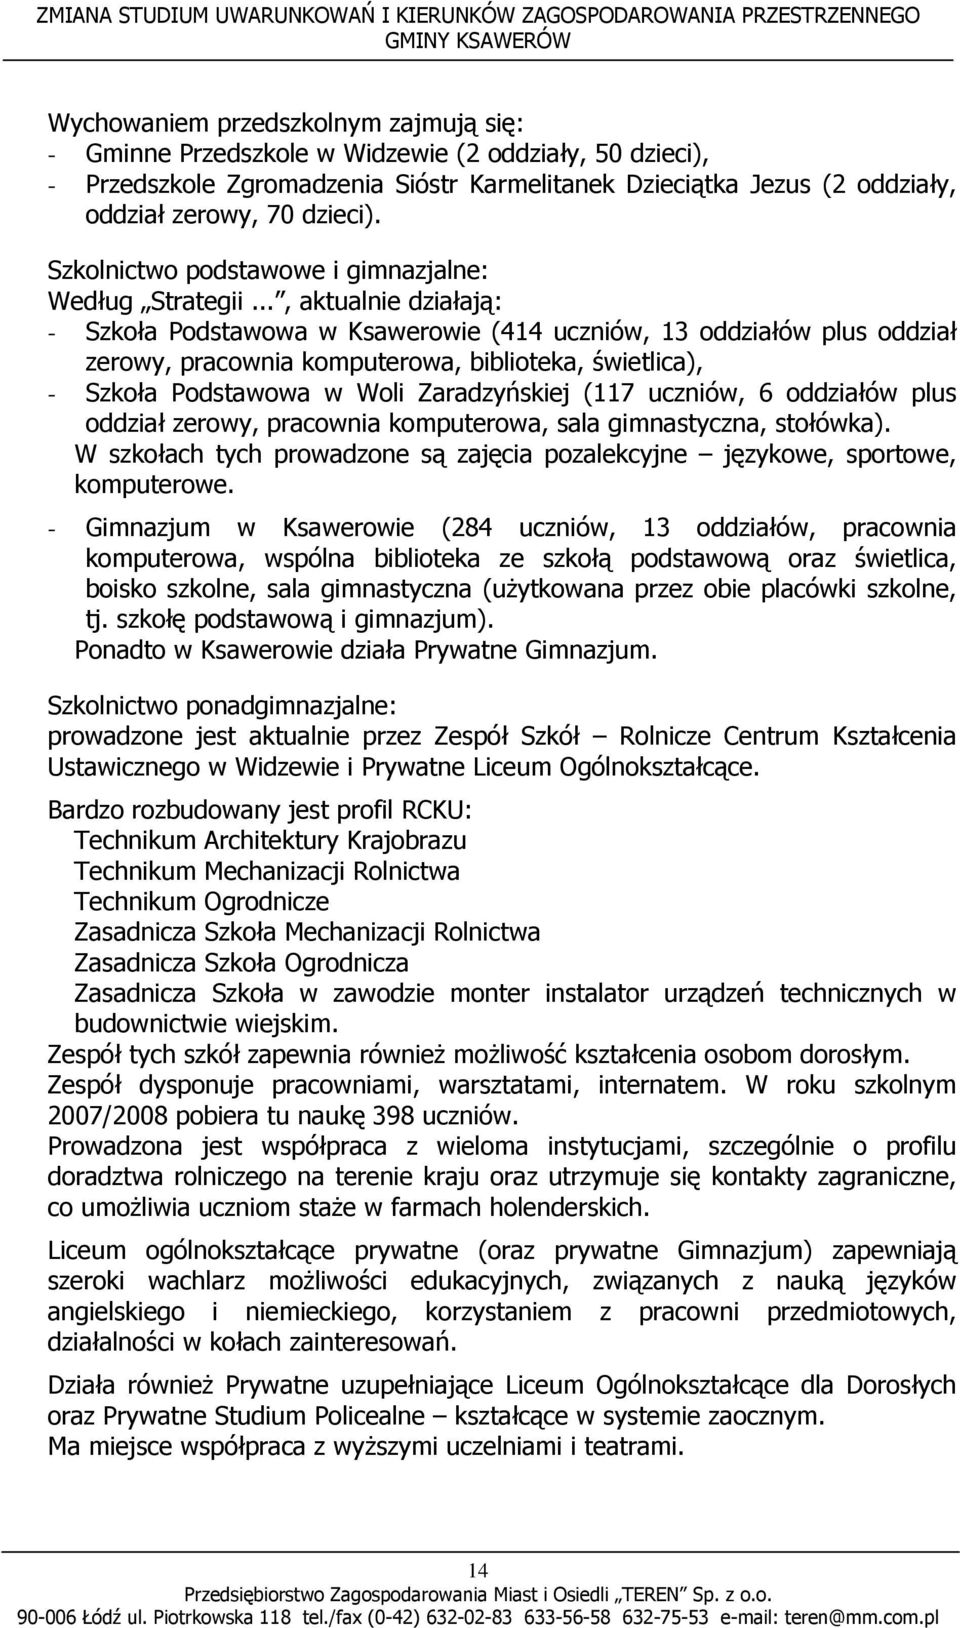 .., aktualnie działają: - Szkoła Podstawowa w Ksawerowie (414 uczniów, 13 oddziałów plus oddział zerowy, pracownia komputerowa, biblioteka, świetlica), - Szkoła Podstawowa w Woli Zaradzyńskiej (117